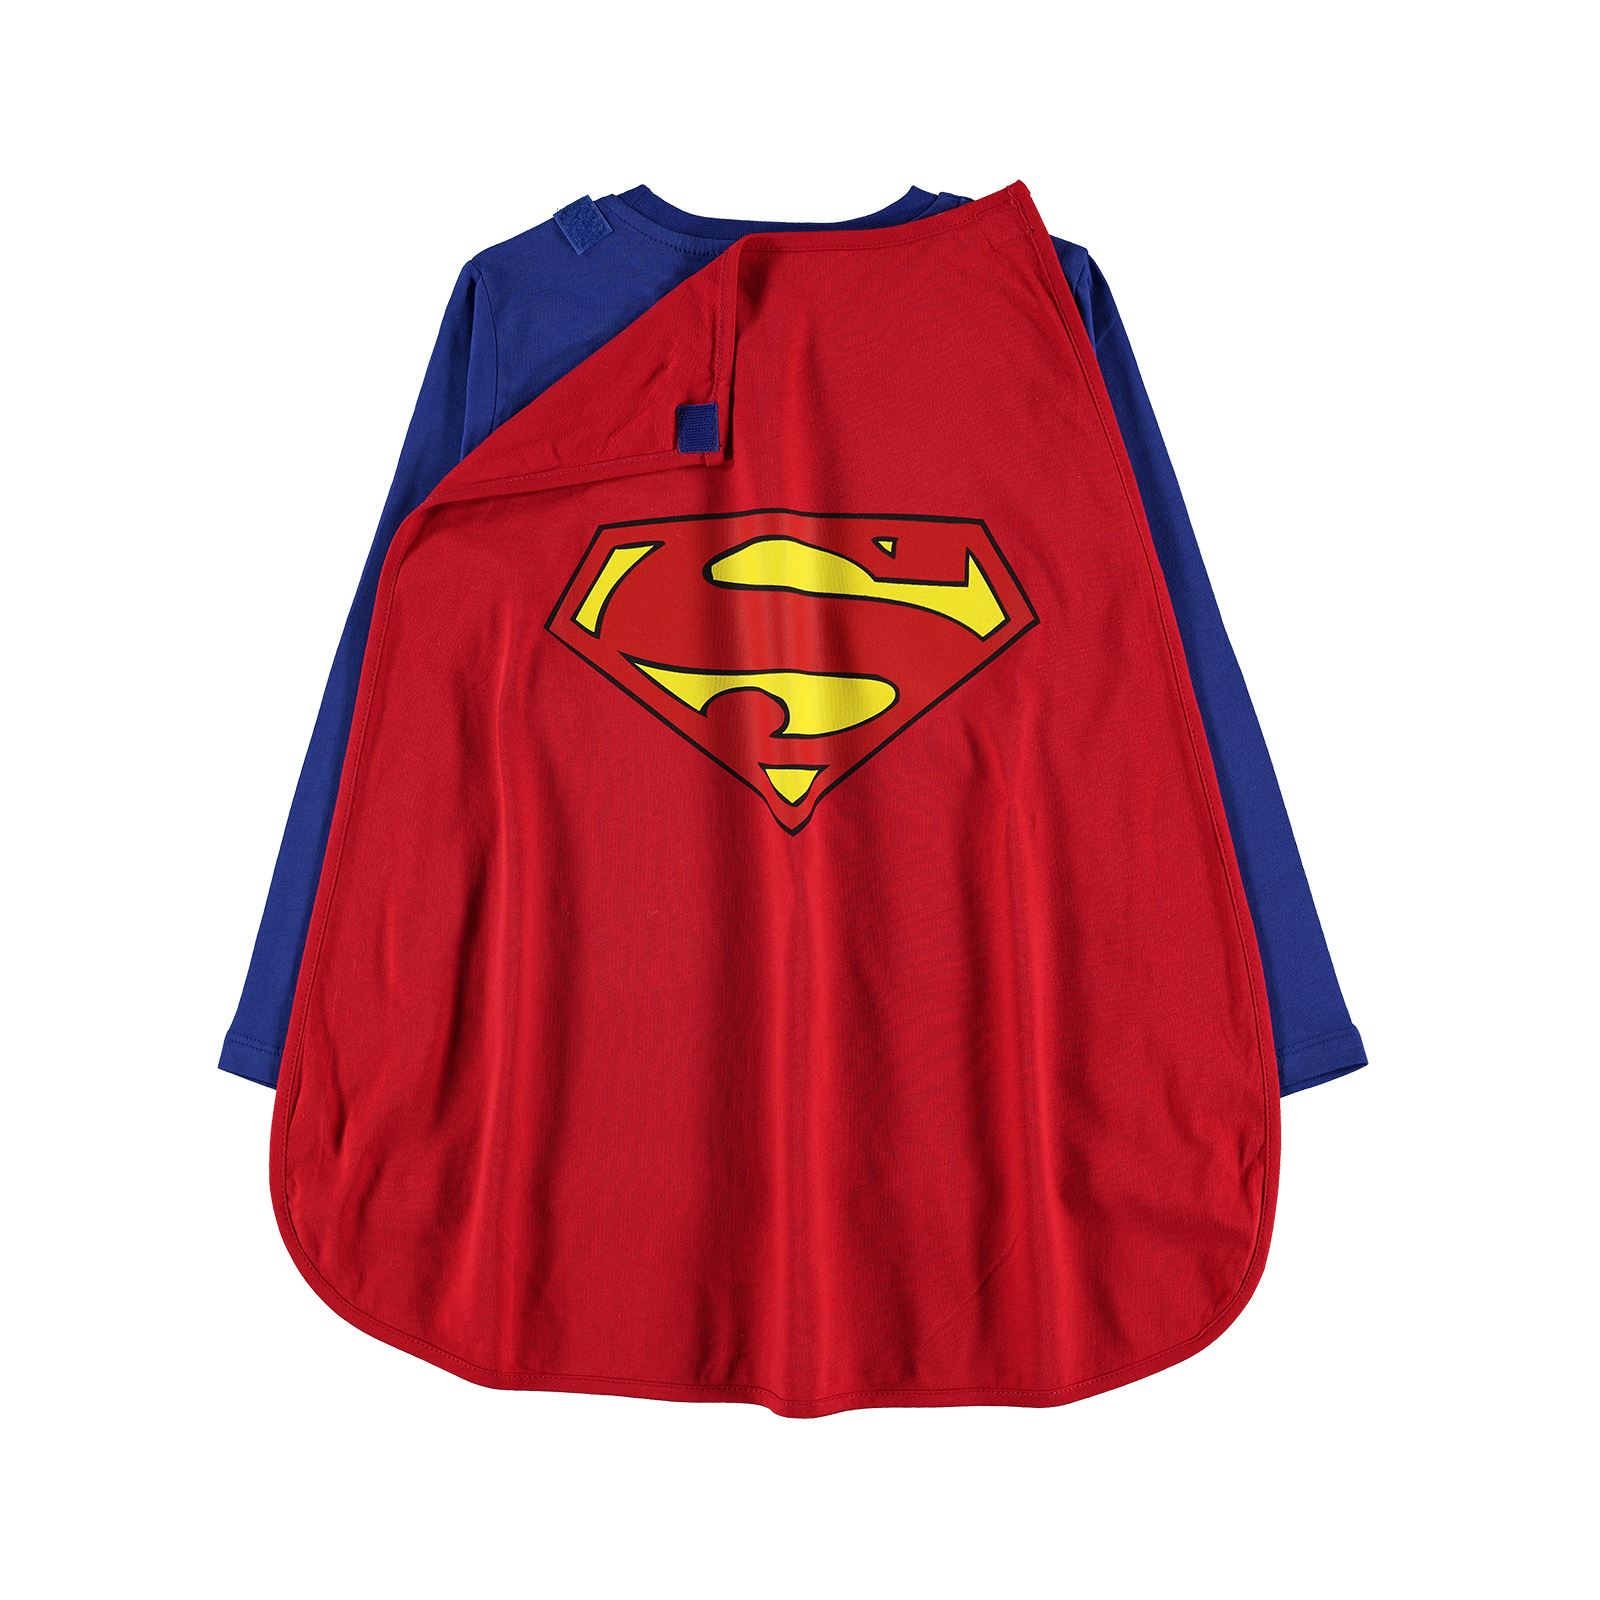 Superman Erkek Çocuk Pelerinli Sweatshirt 10-13 Yaş Saks Mavisi